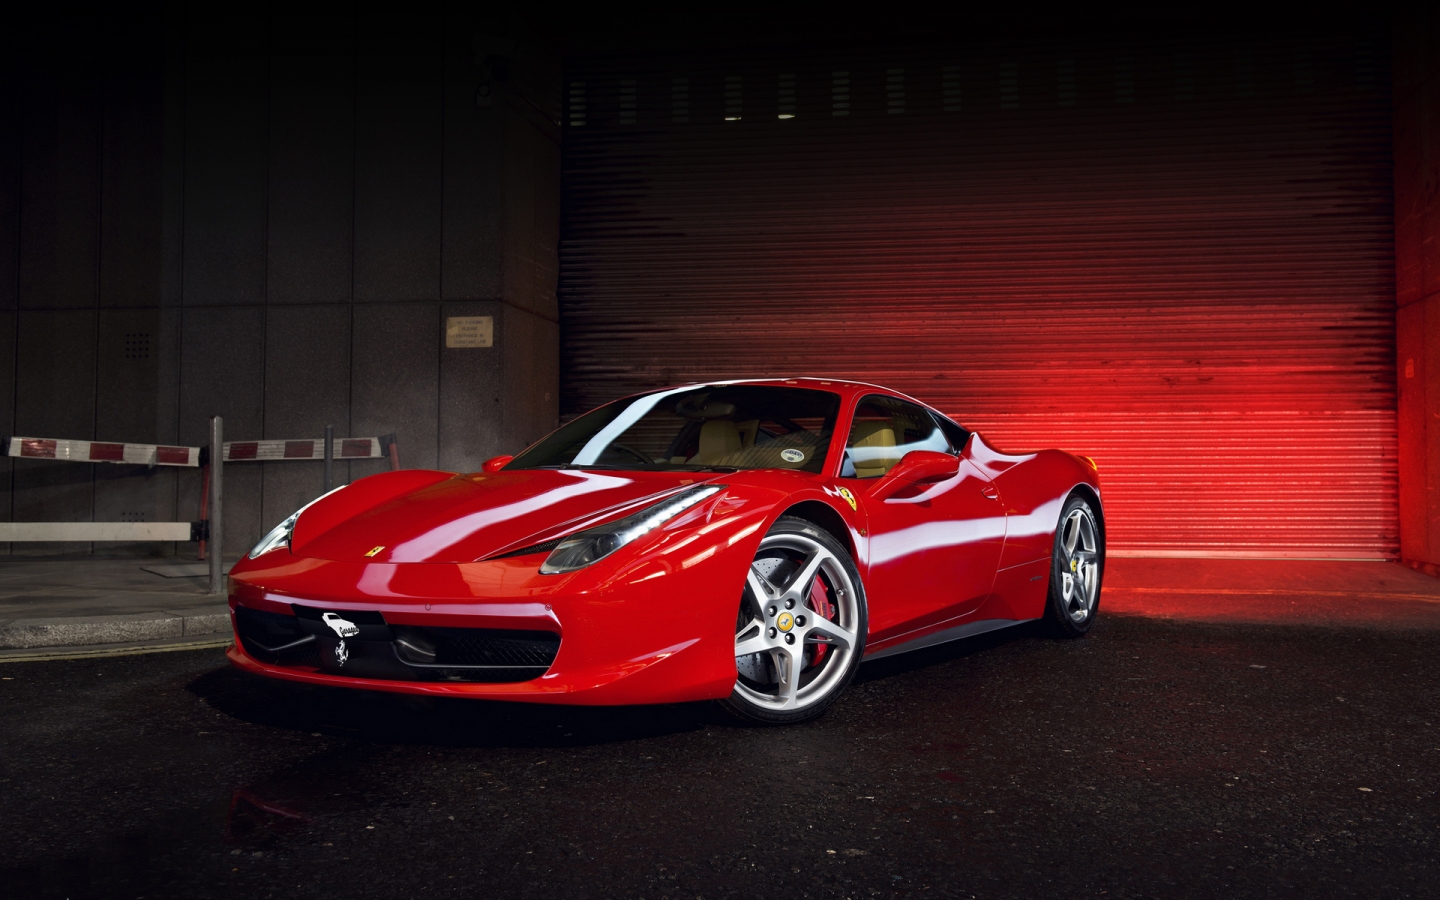 Red Ferrari 458 Italia for 1440 x 900 widescreen resolution